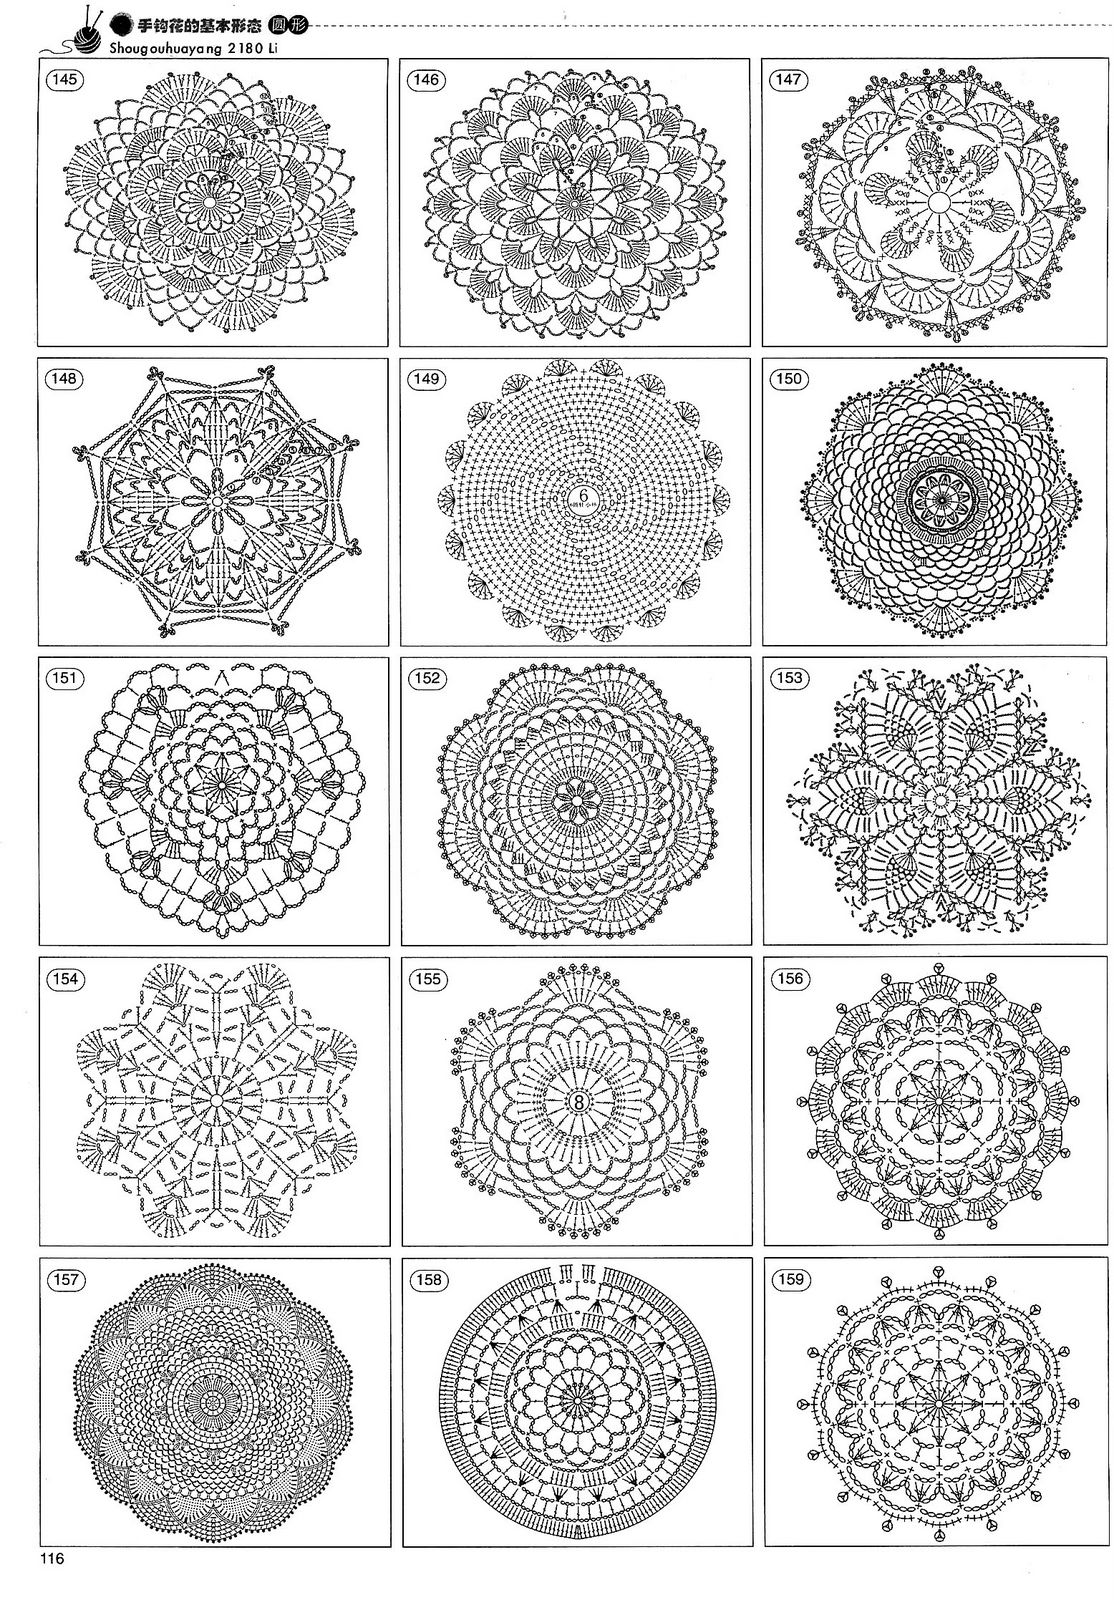  Crochet  Crochet  chart  and Crochet  motif  on Pinterest